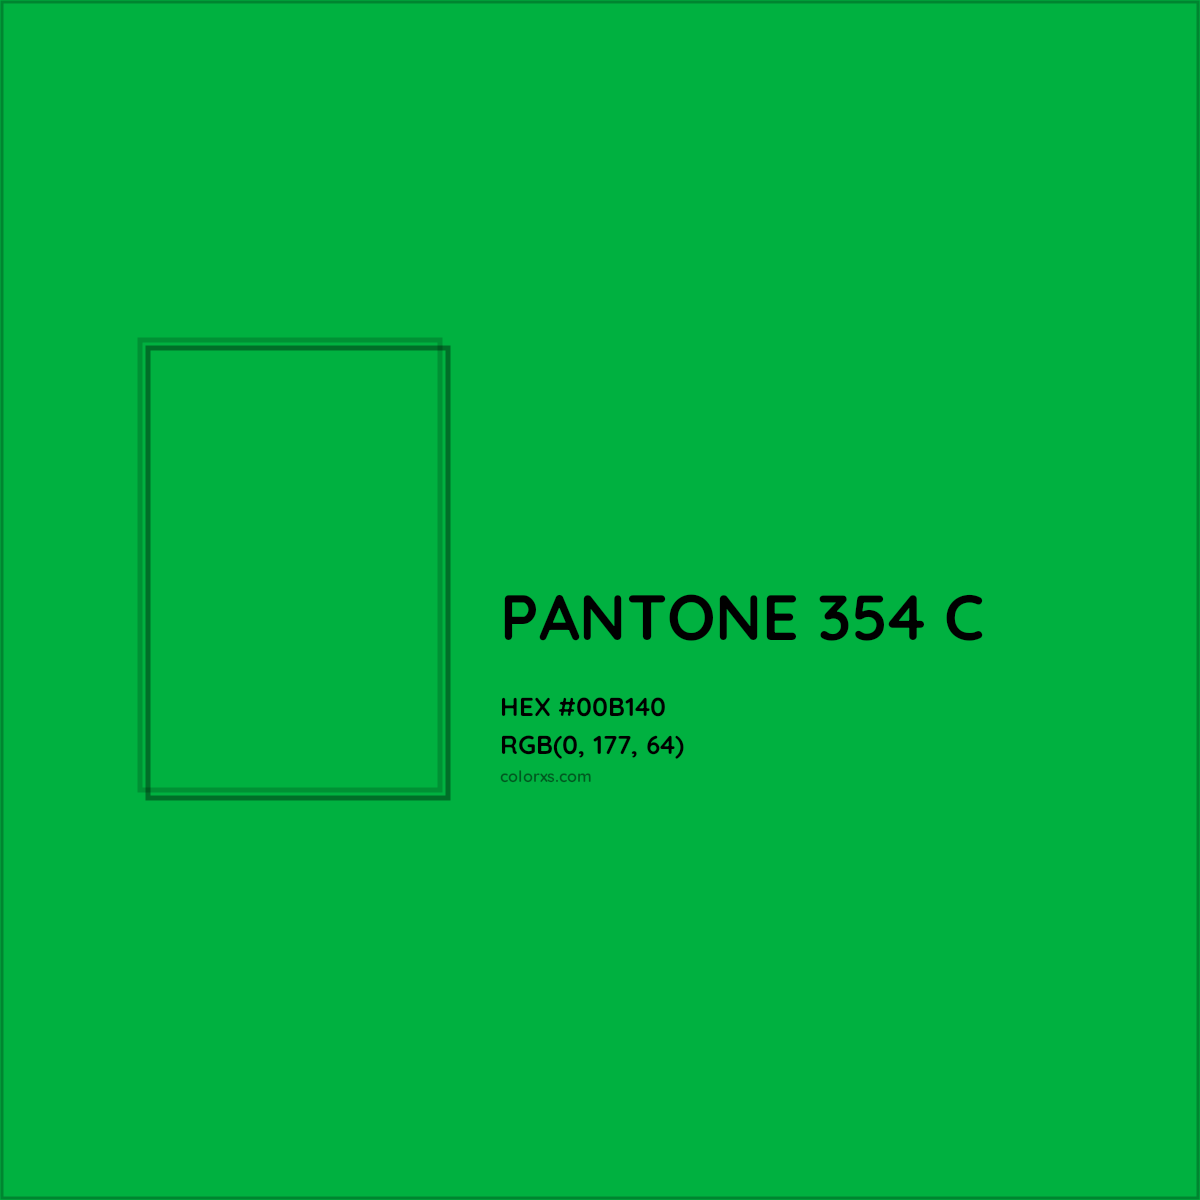 HEX #00B140 PANTONE 354 C CMS Pantone PMS - Color Code